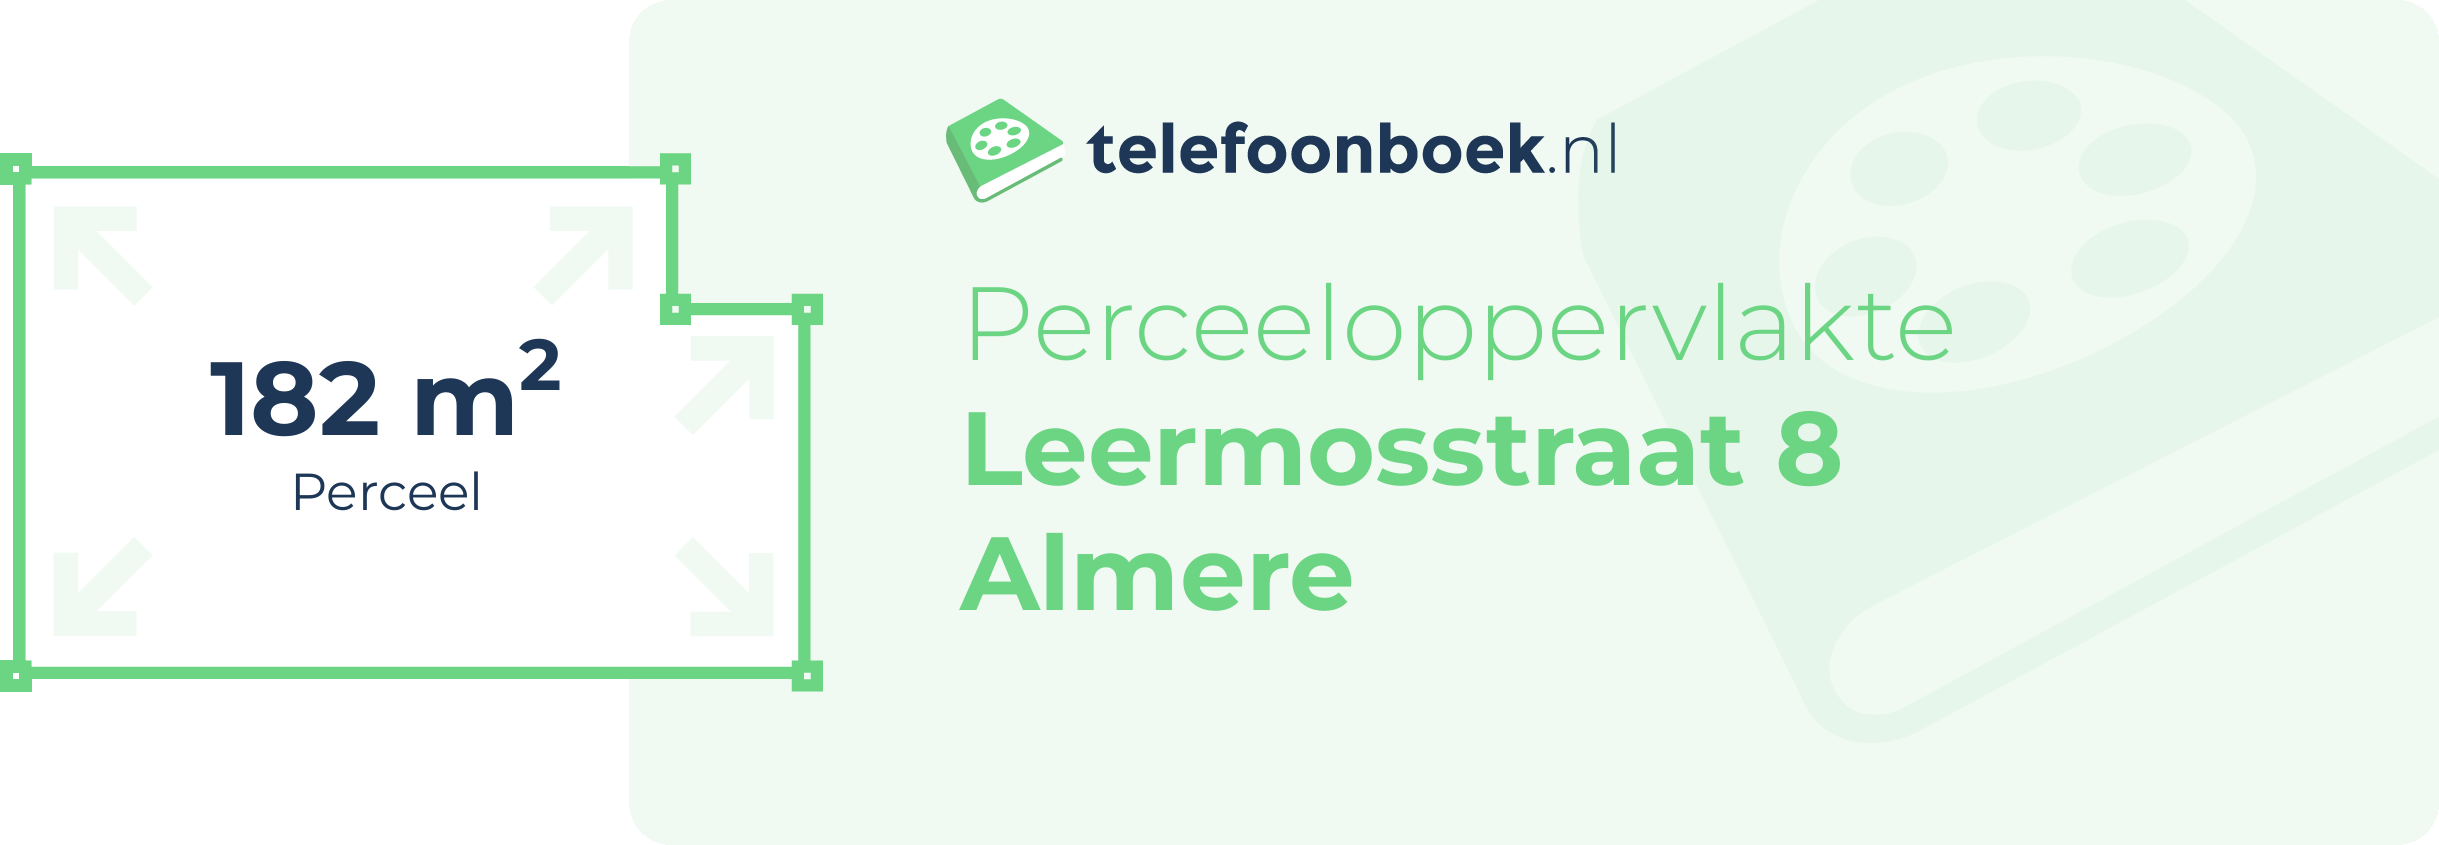 Perceeloppervlakte Leermosstraat 8 Almere